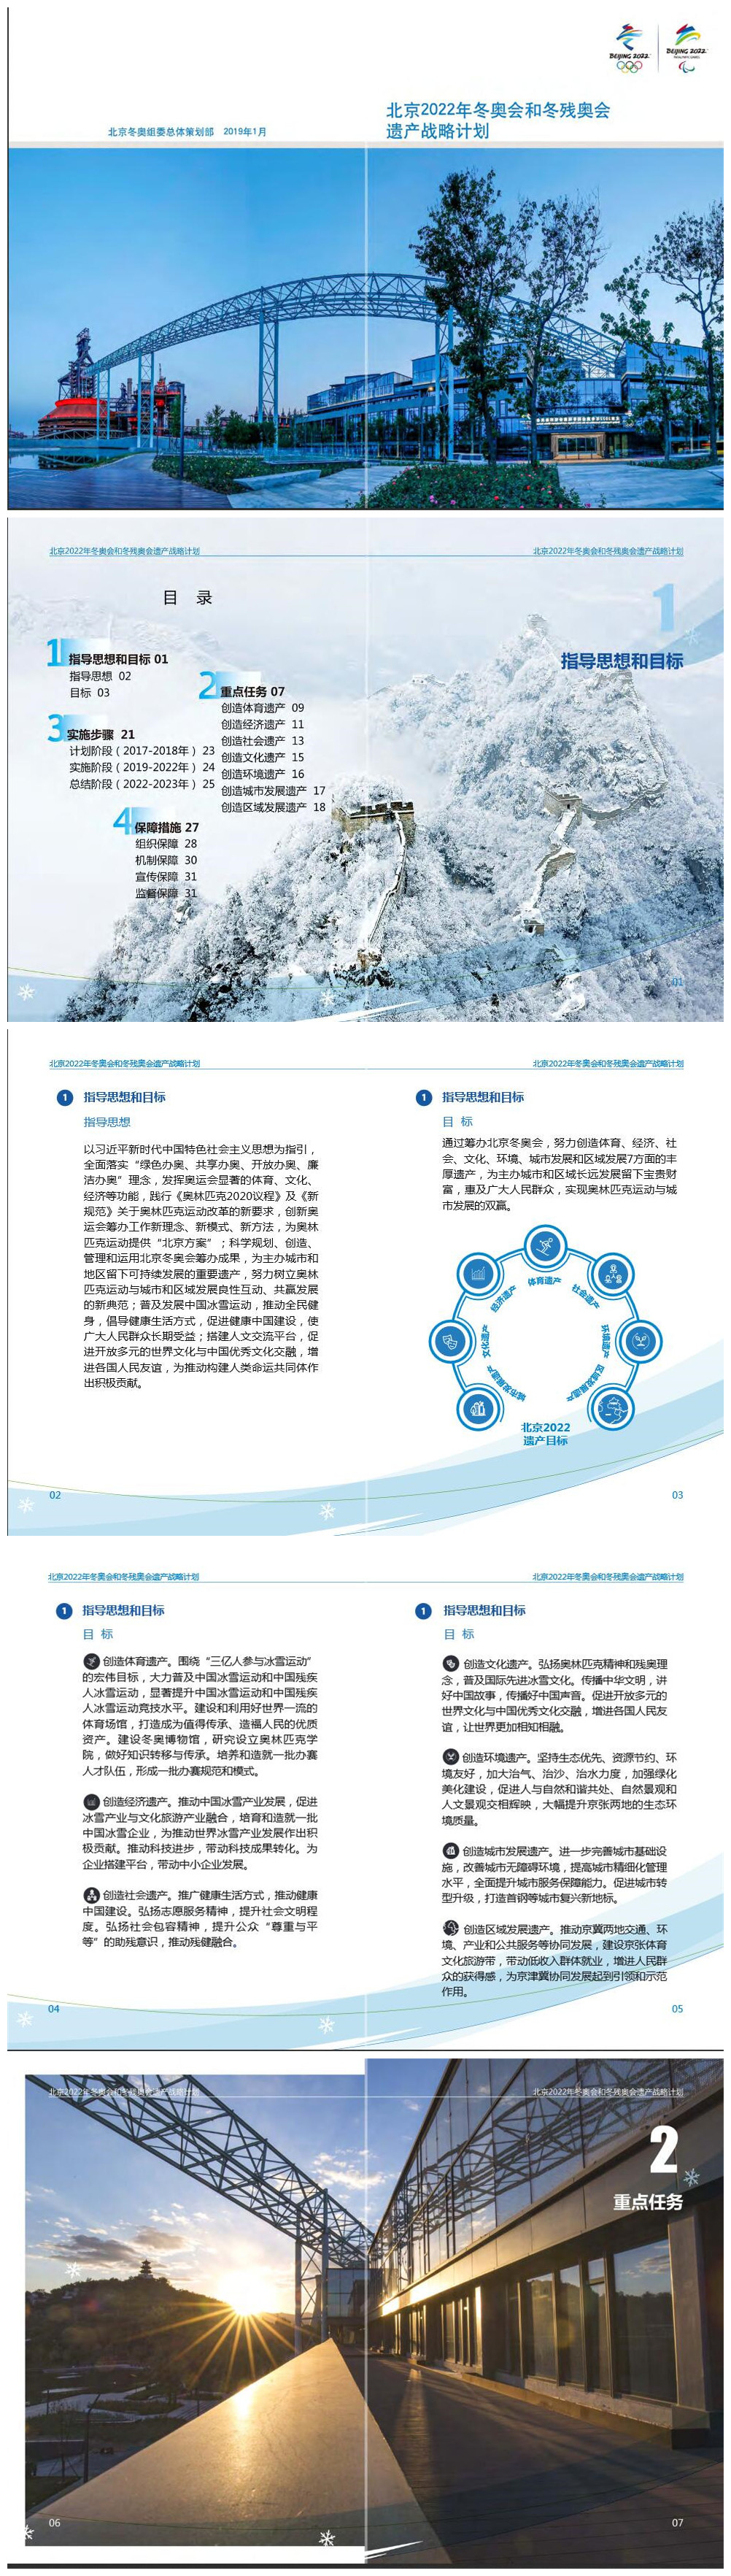 《北京2022年冬奥会和冬残奥会遗产战略计划》1